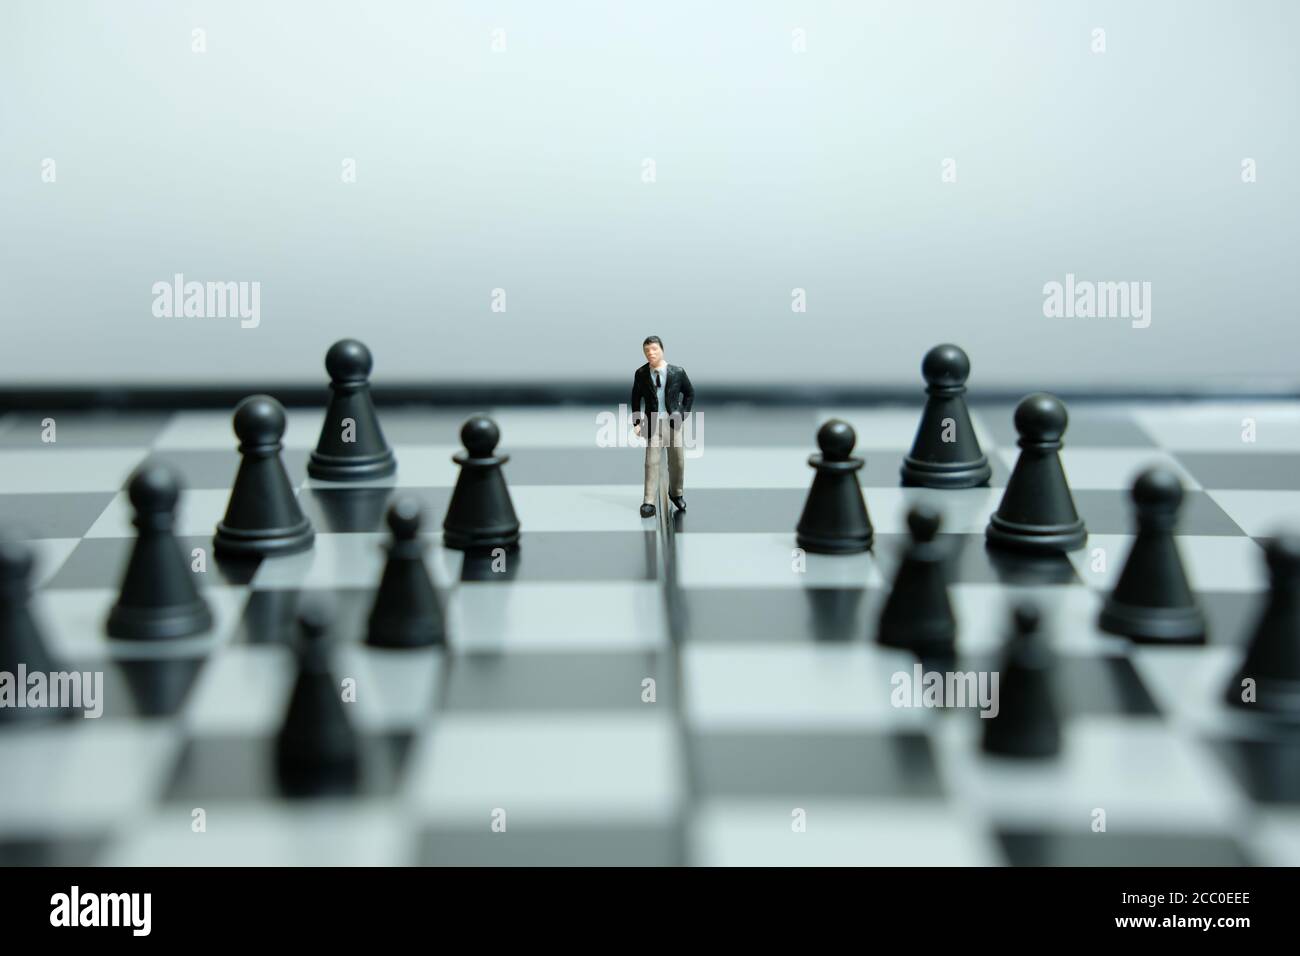 Photo conceptuelle de la stratégie d'affaires - miniature de l'homme d'affaires qui marche en avant au milieu d'une pièce d'échecs sur un échiquier Banque D'Images